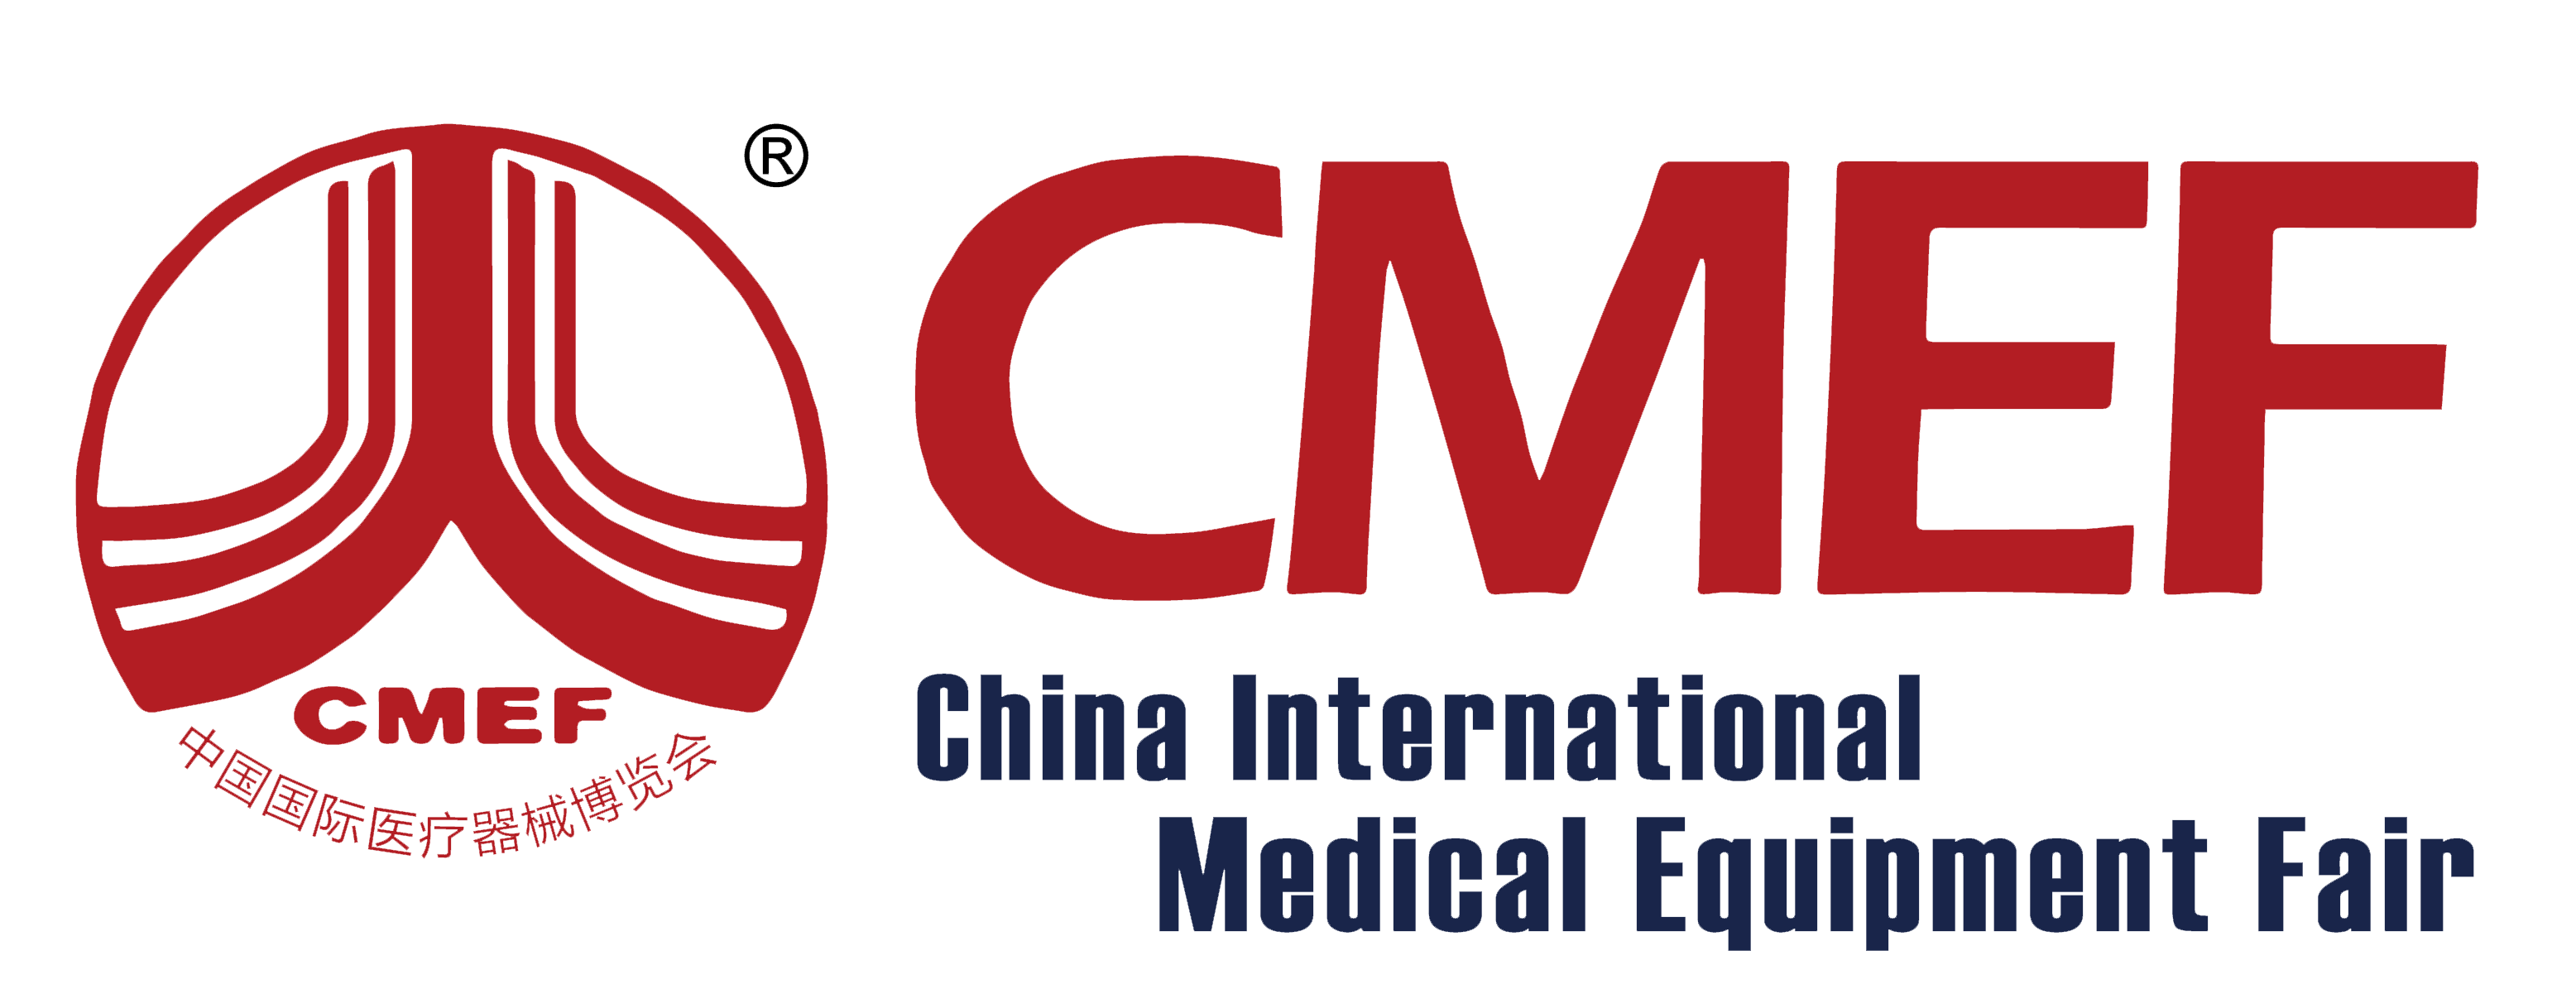 ¡Rixin Medical lo invita a venir al CMEF de Shanghai!